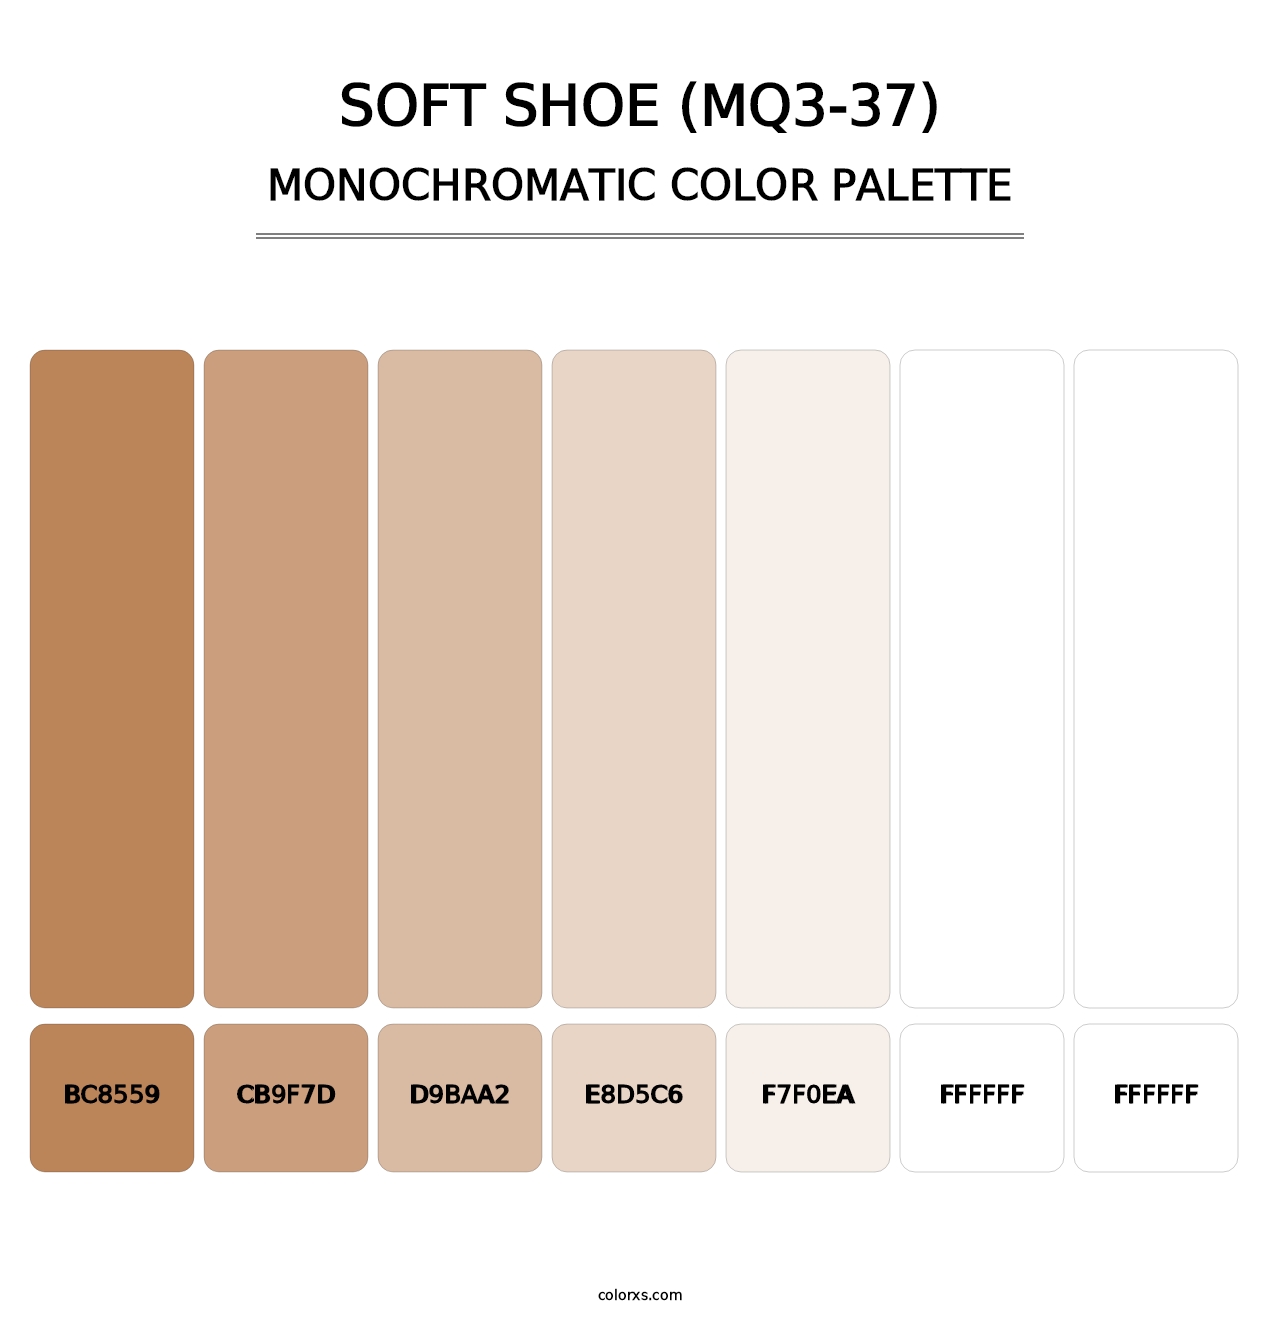 Soft Shoe (MQ3-37) - Monochromatic Color Palette